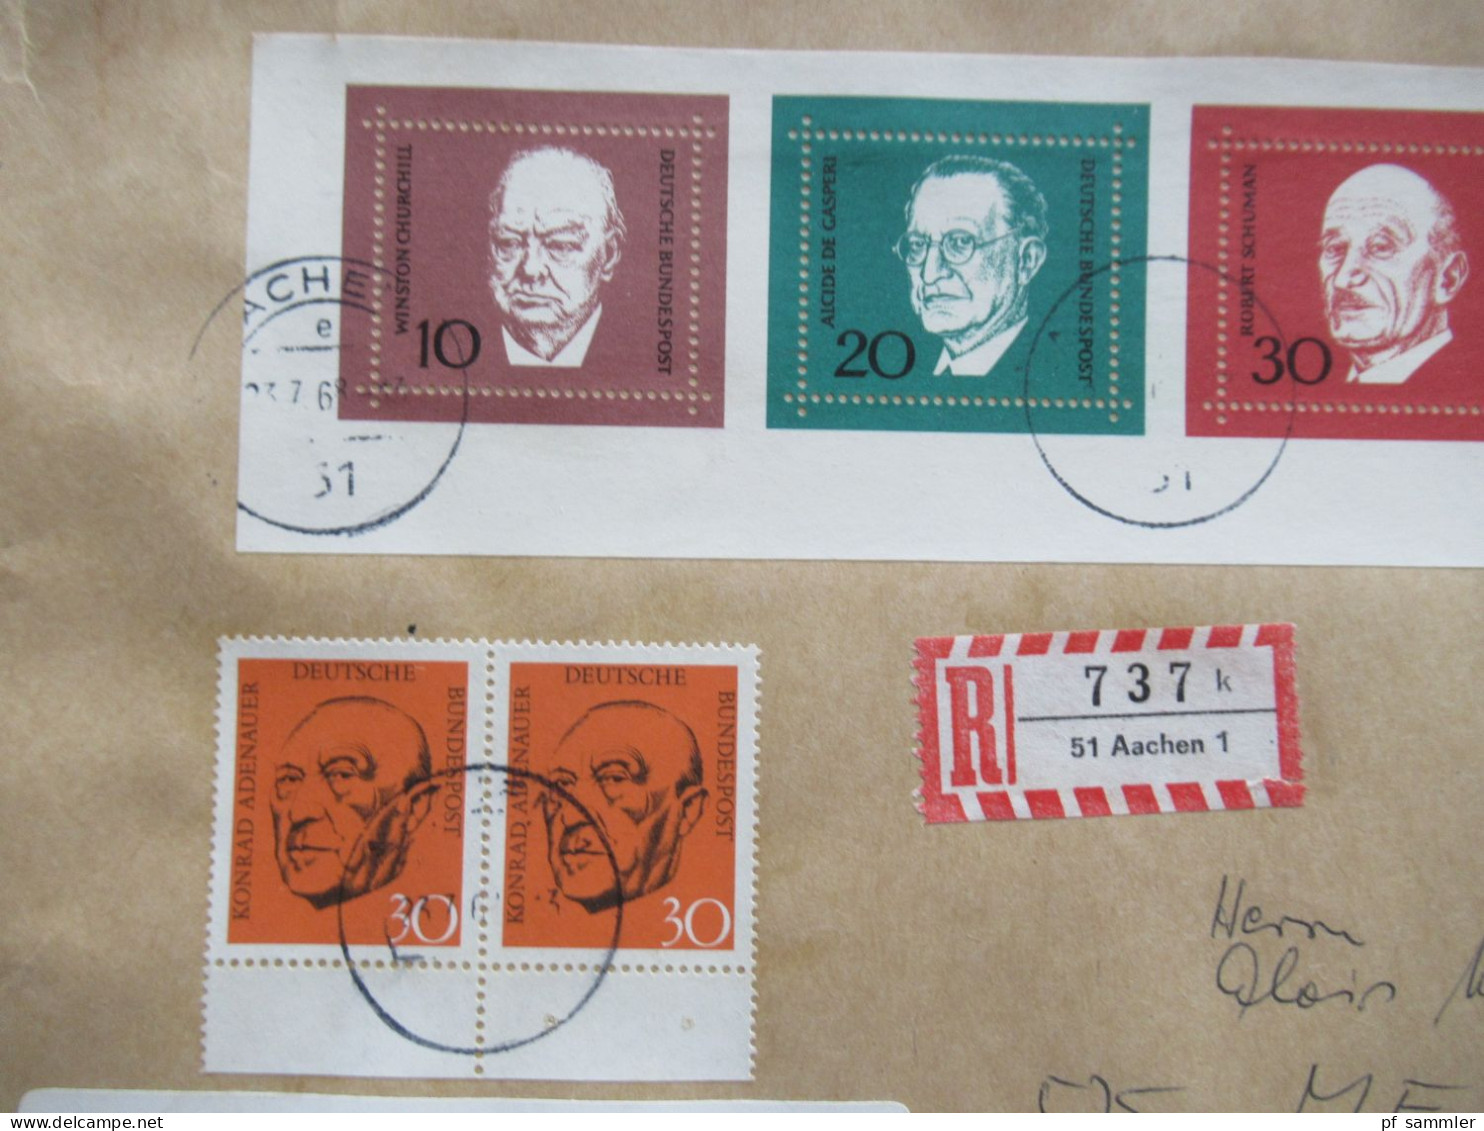 BRD 1968 Block 4 kleiner Belegeposten mit 12x FDC als Einschreiben und 1x Blockeinzelmarken + Block auf gr. Briefstück